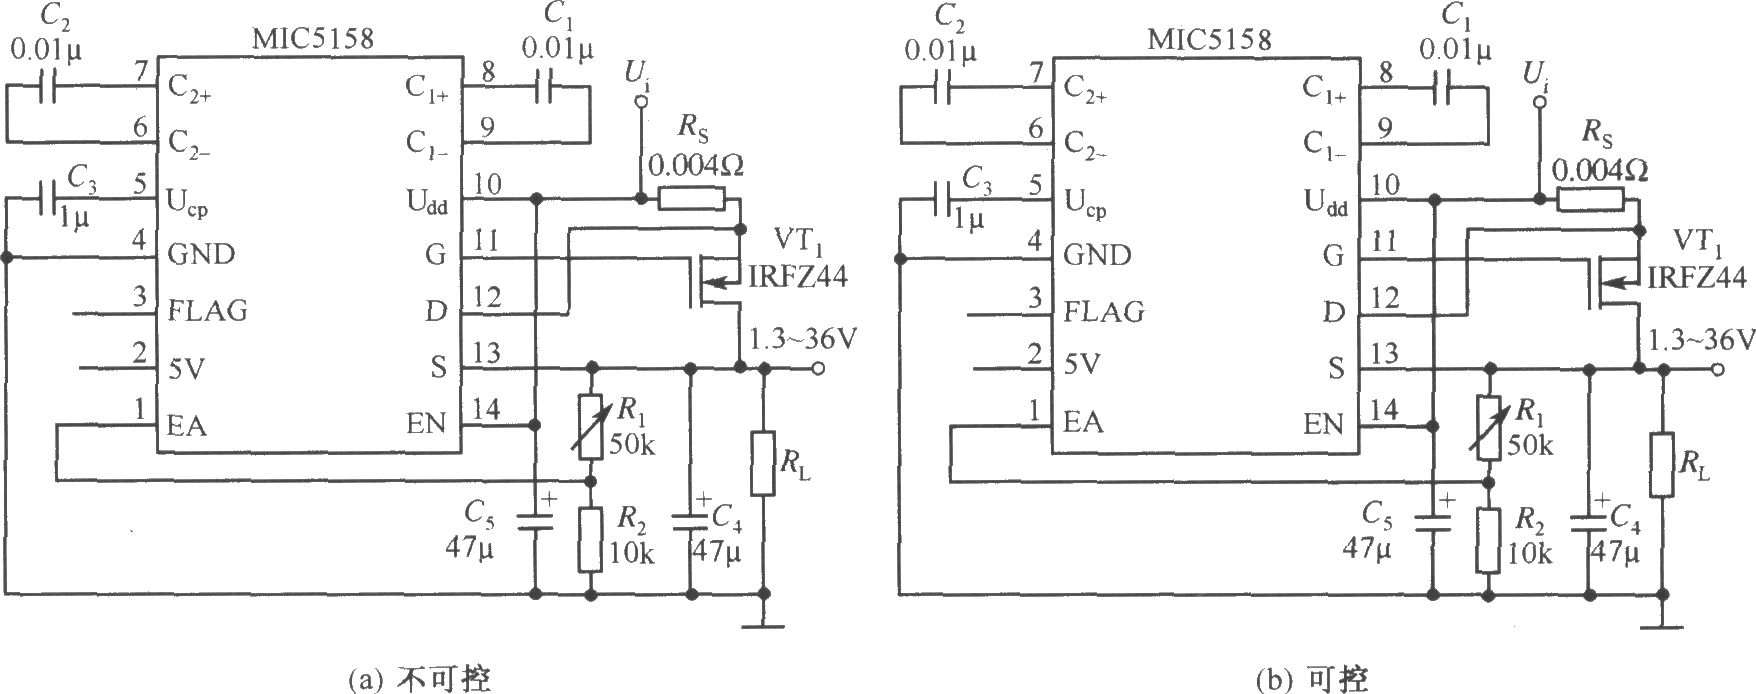 MIC5158构成的输出电压可调的线性稳压器电路